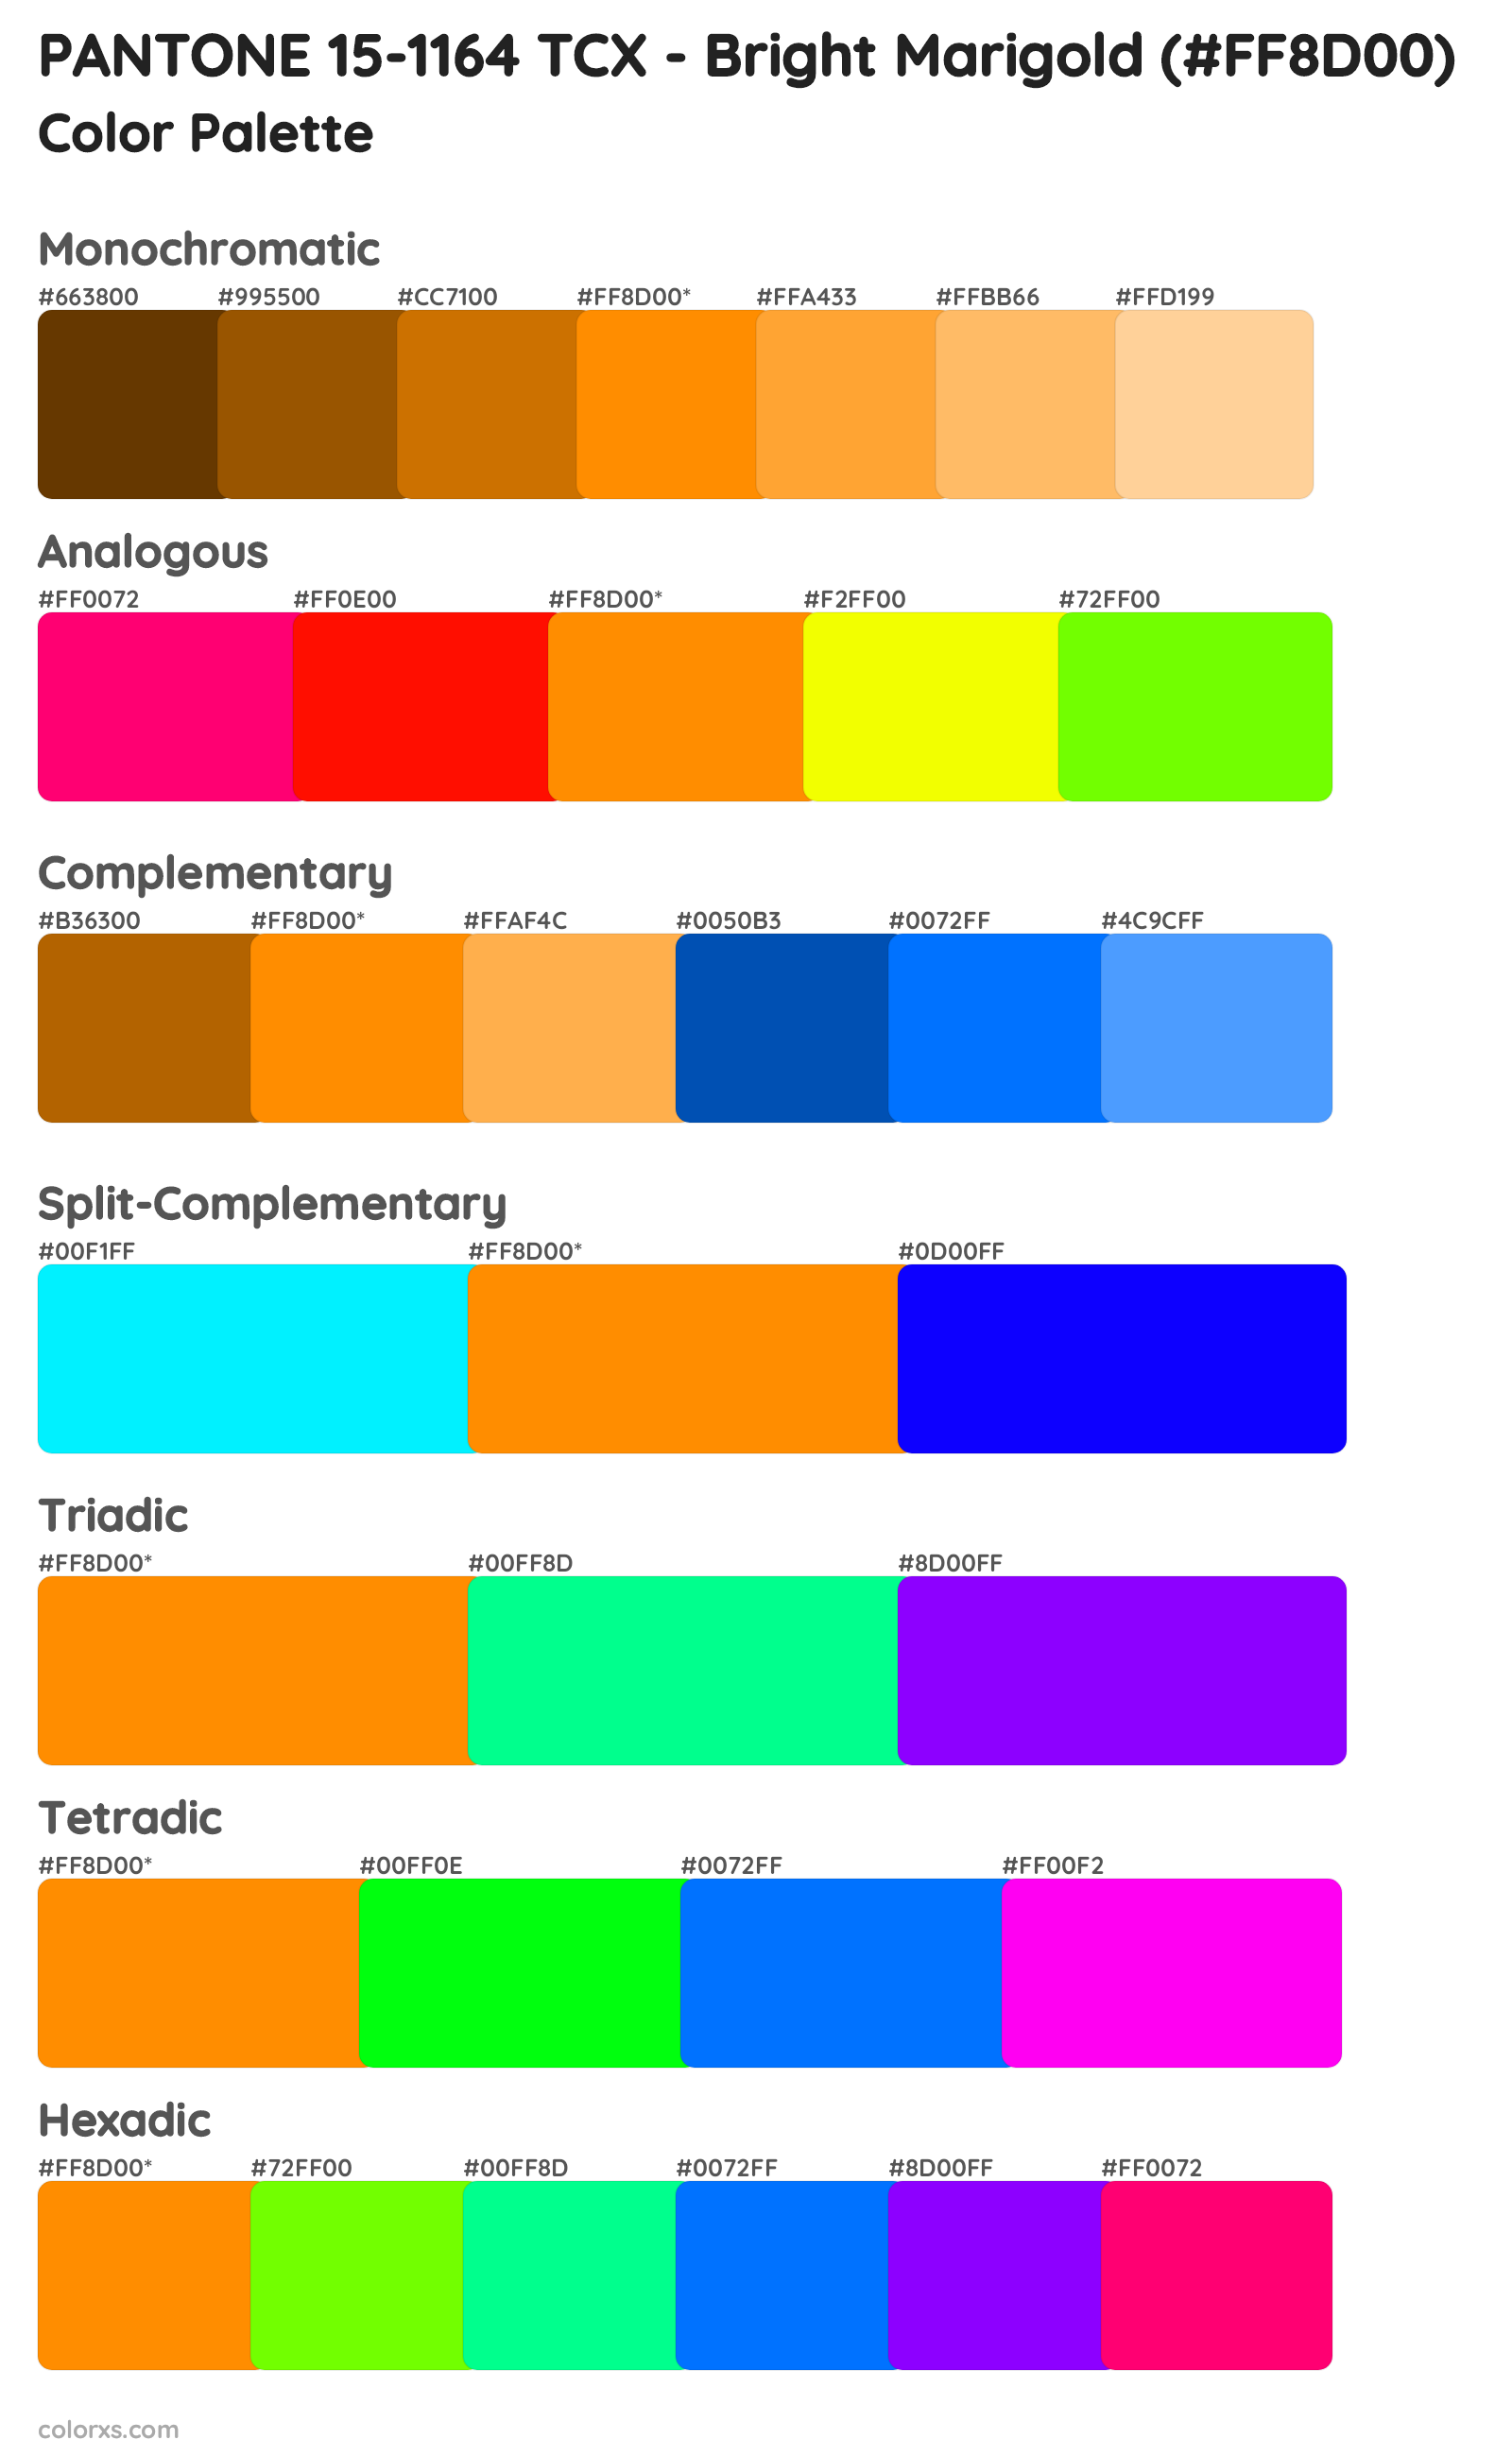 PANTONE 15-1164 TCX - Bright Marigold Color Scheme Palettes